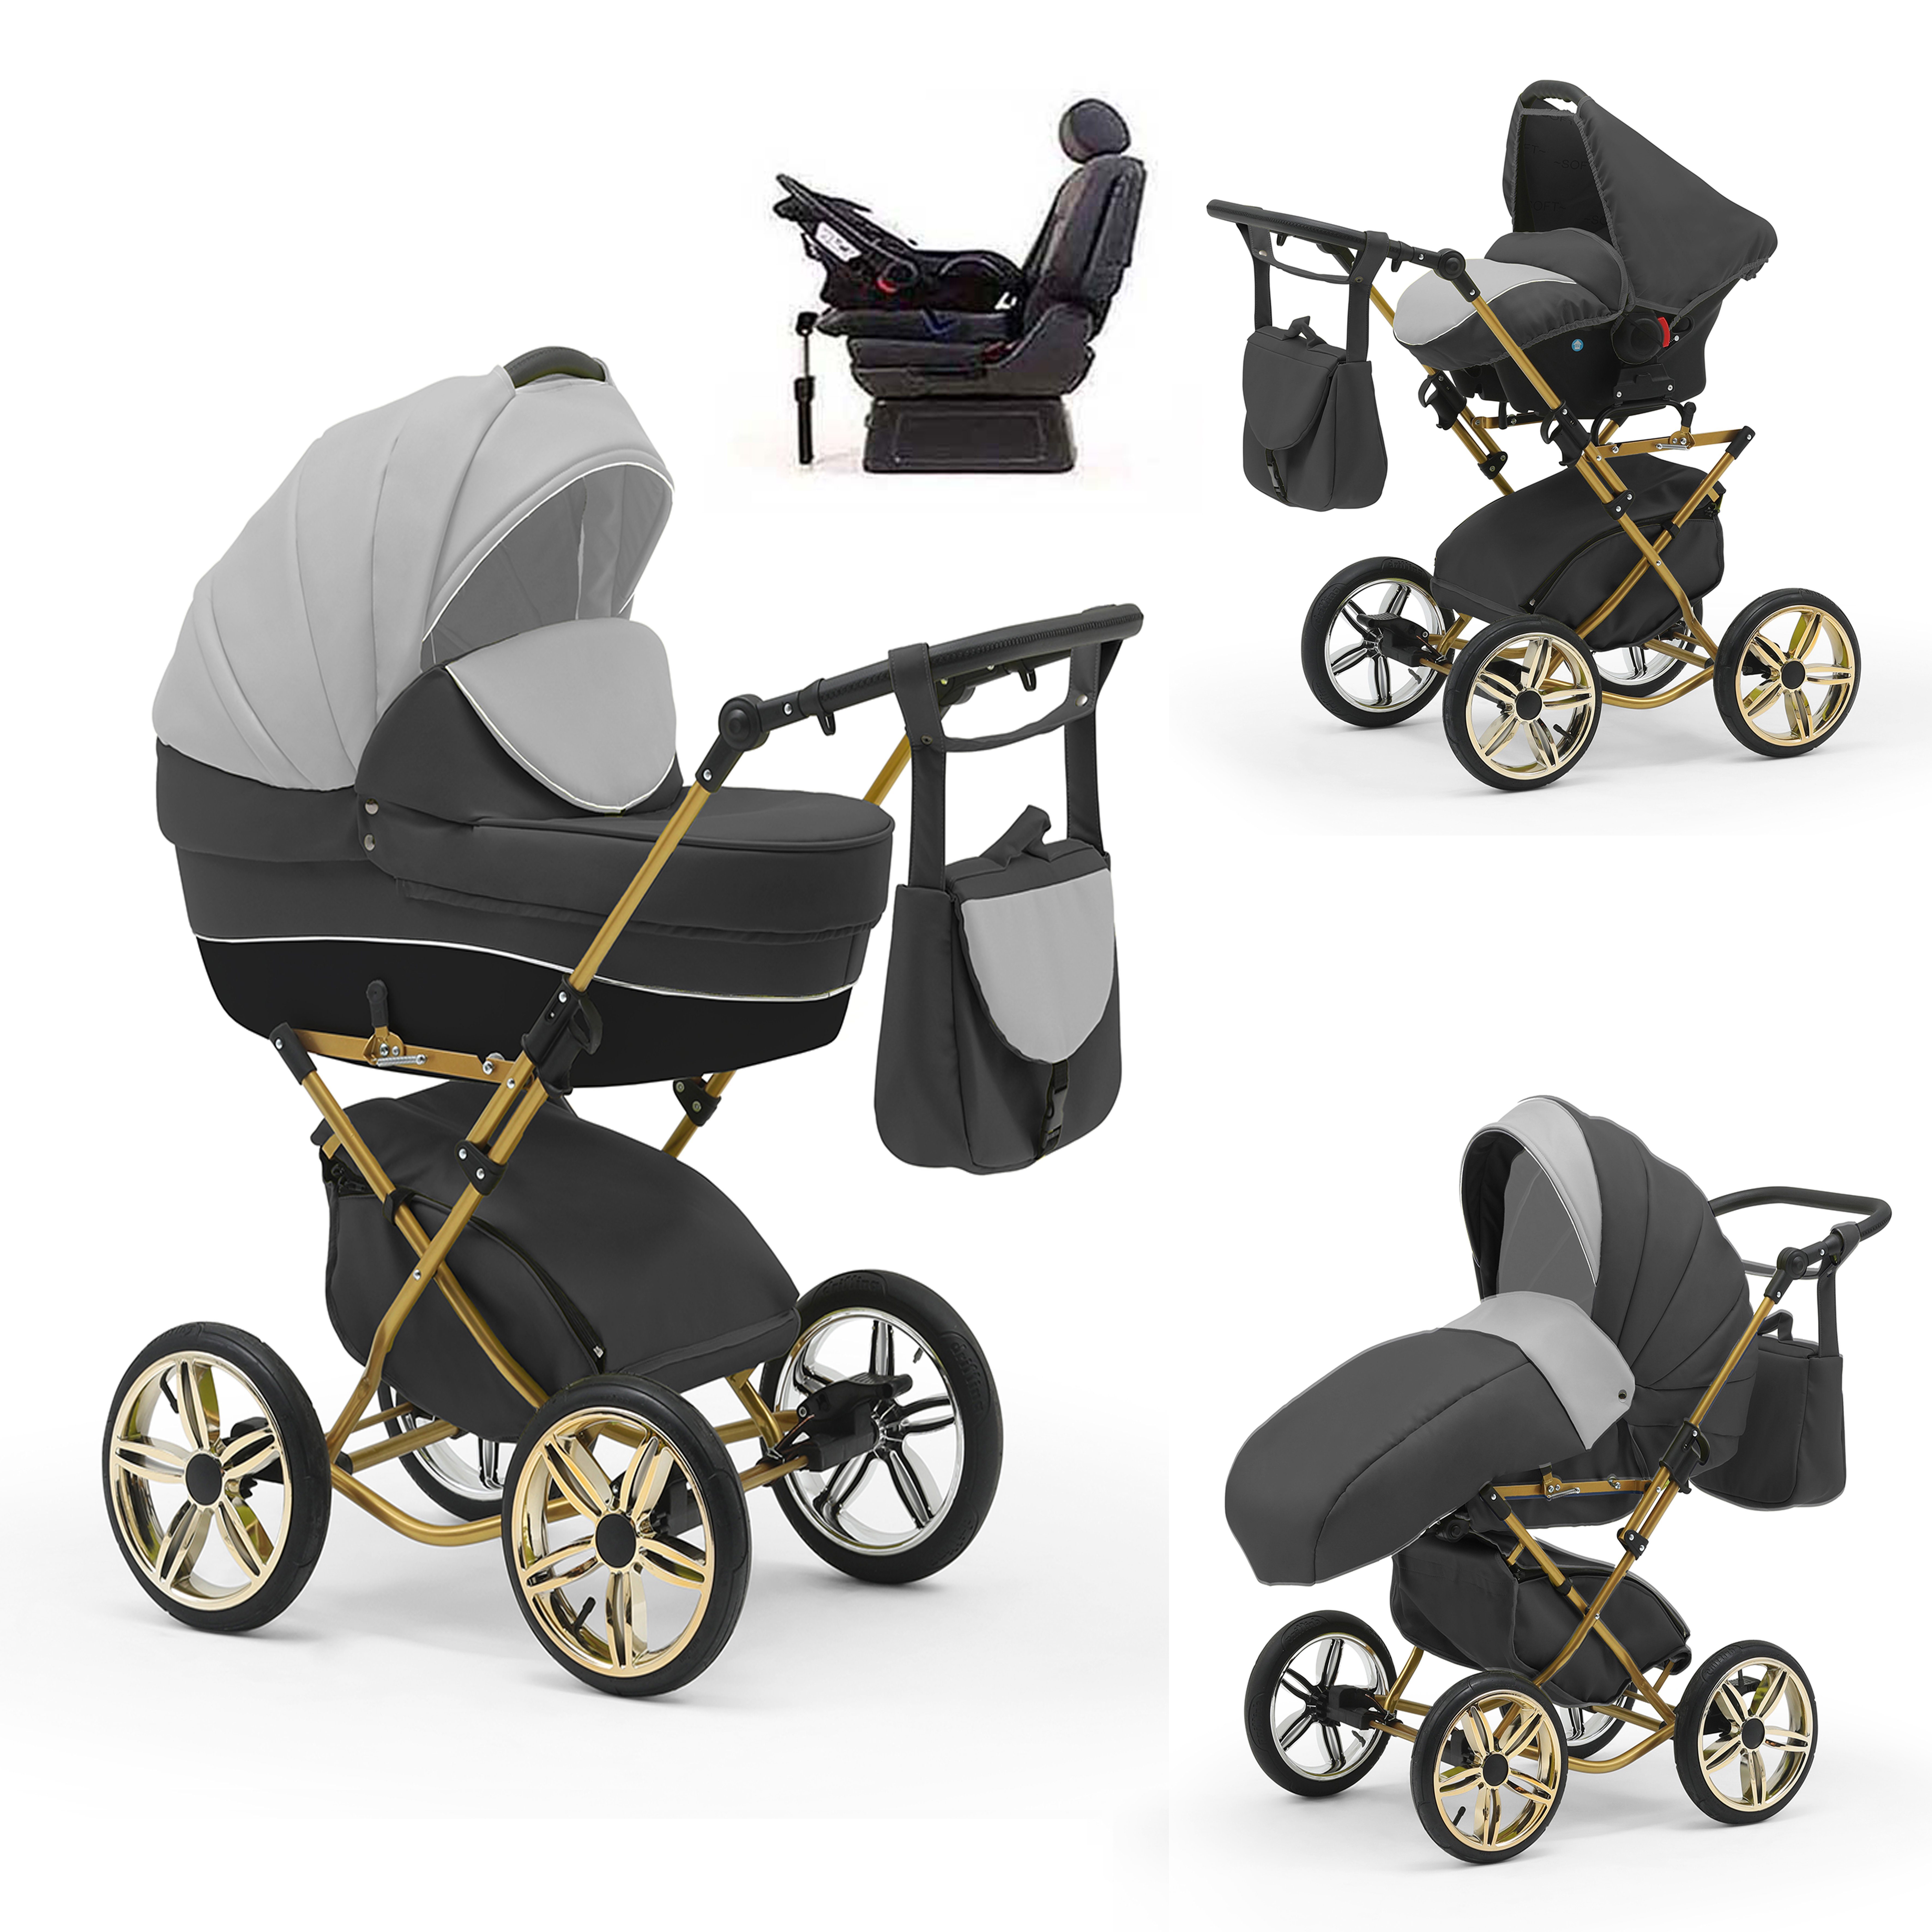 babies-on-wheels Kombi-Kinderwagen Sorento 4 in 1 inkl. Autositz und Iso Base - 14 Teile - in 10 Designs Grau-Hellgrau-Schwarz